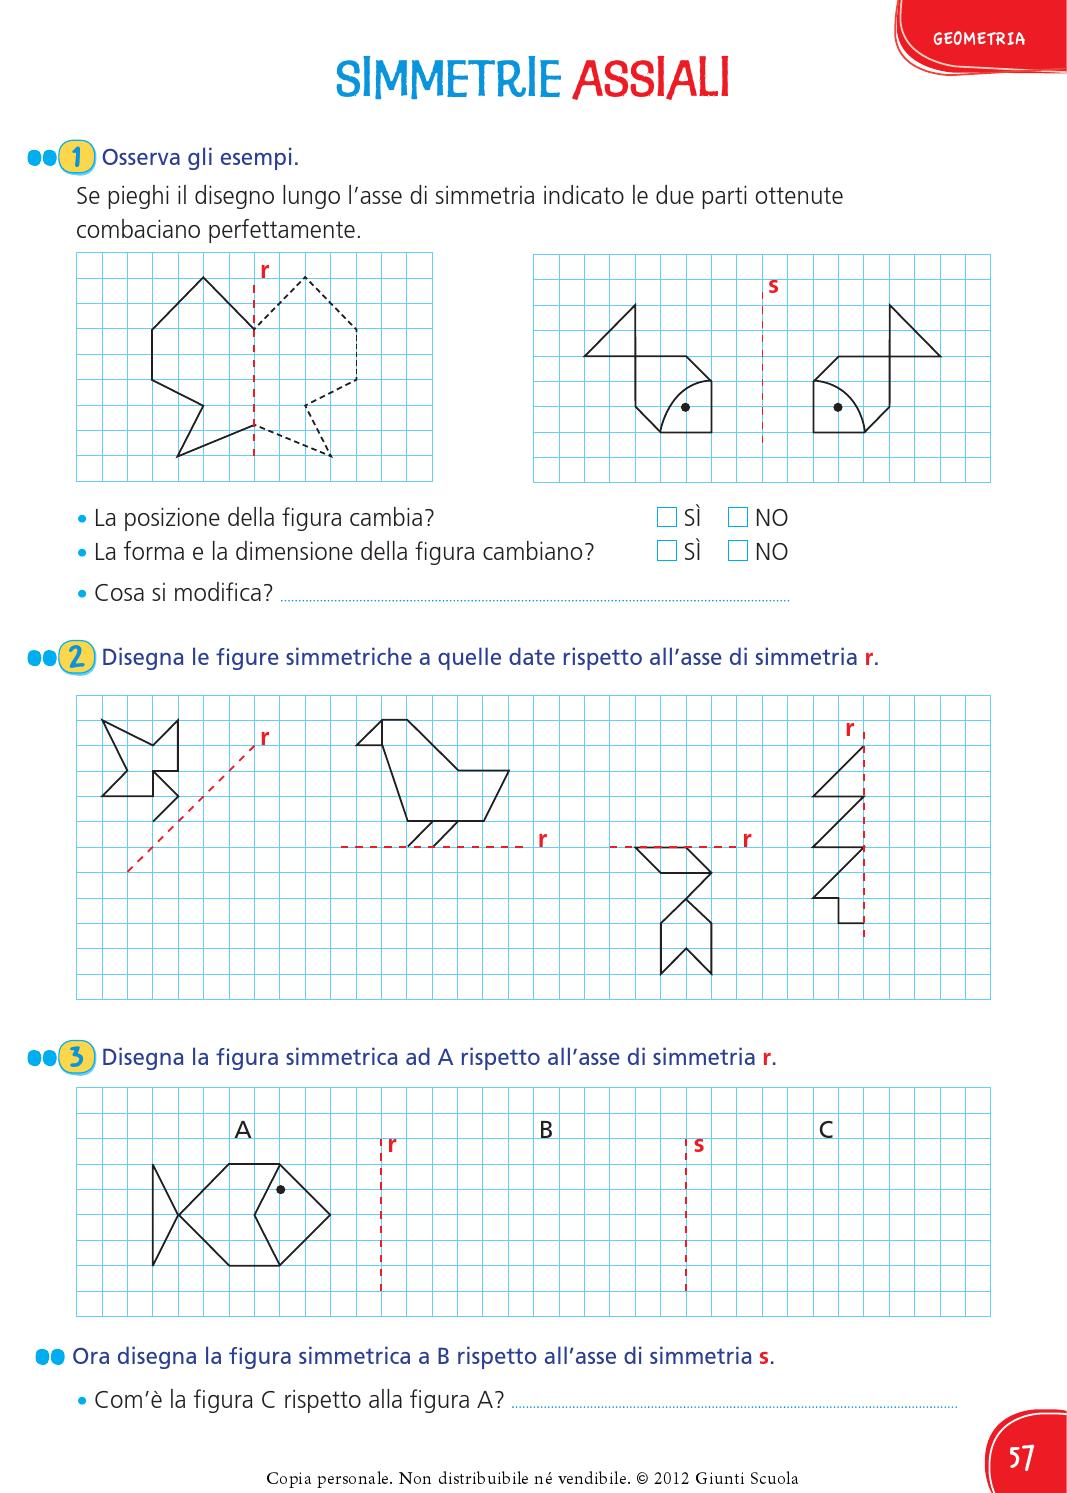 Come si disegnano le figure simmetriche